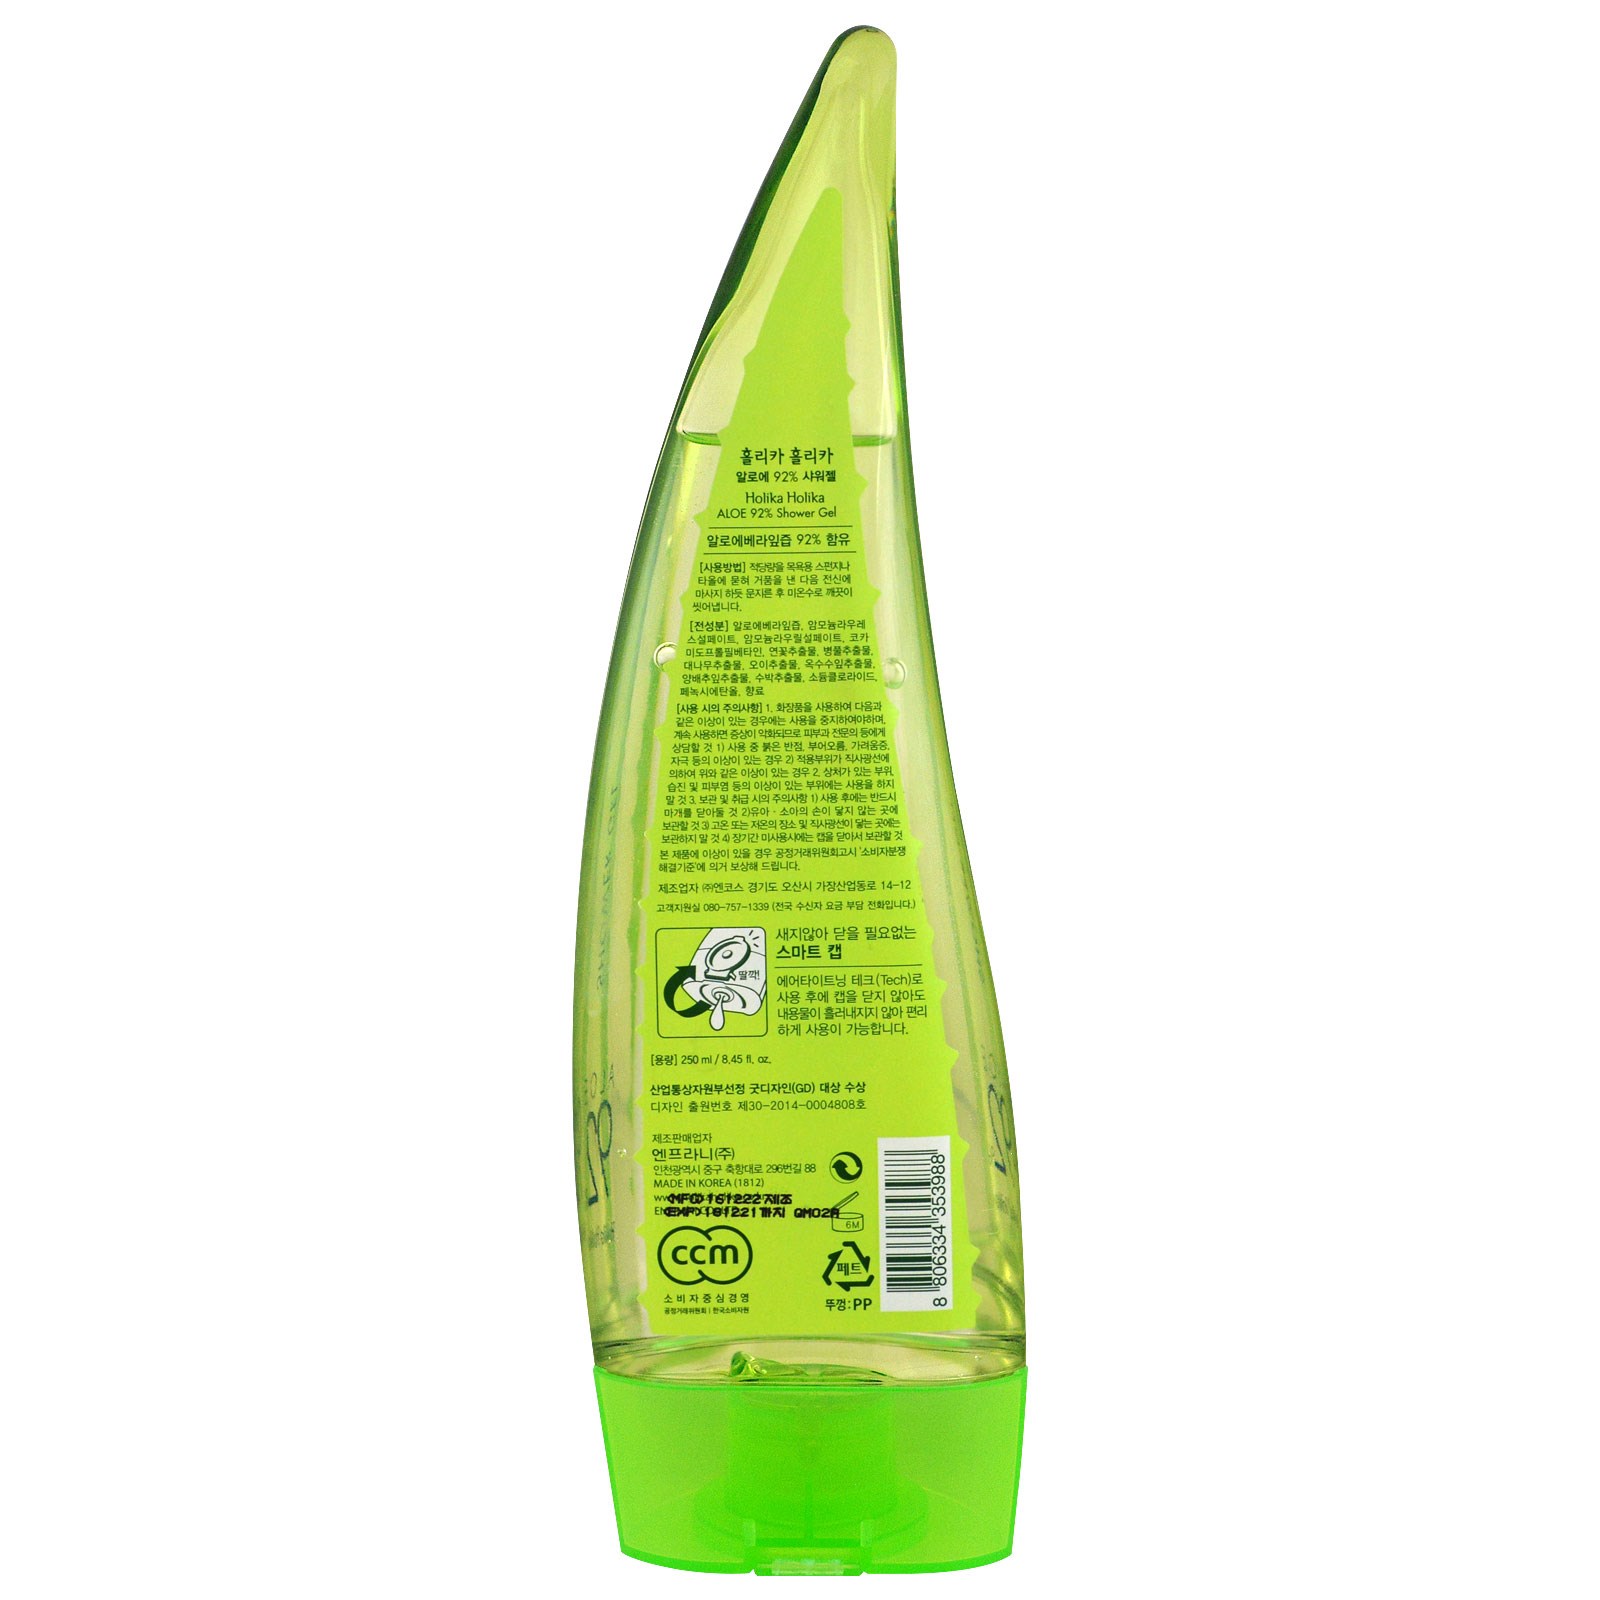 Holika Holika, Shower Gel, Aloe 92%, 8.45 fl oz (250 ml)